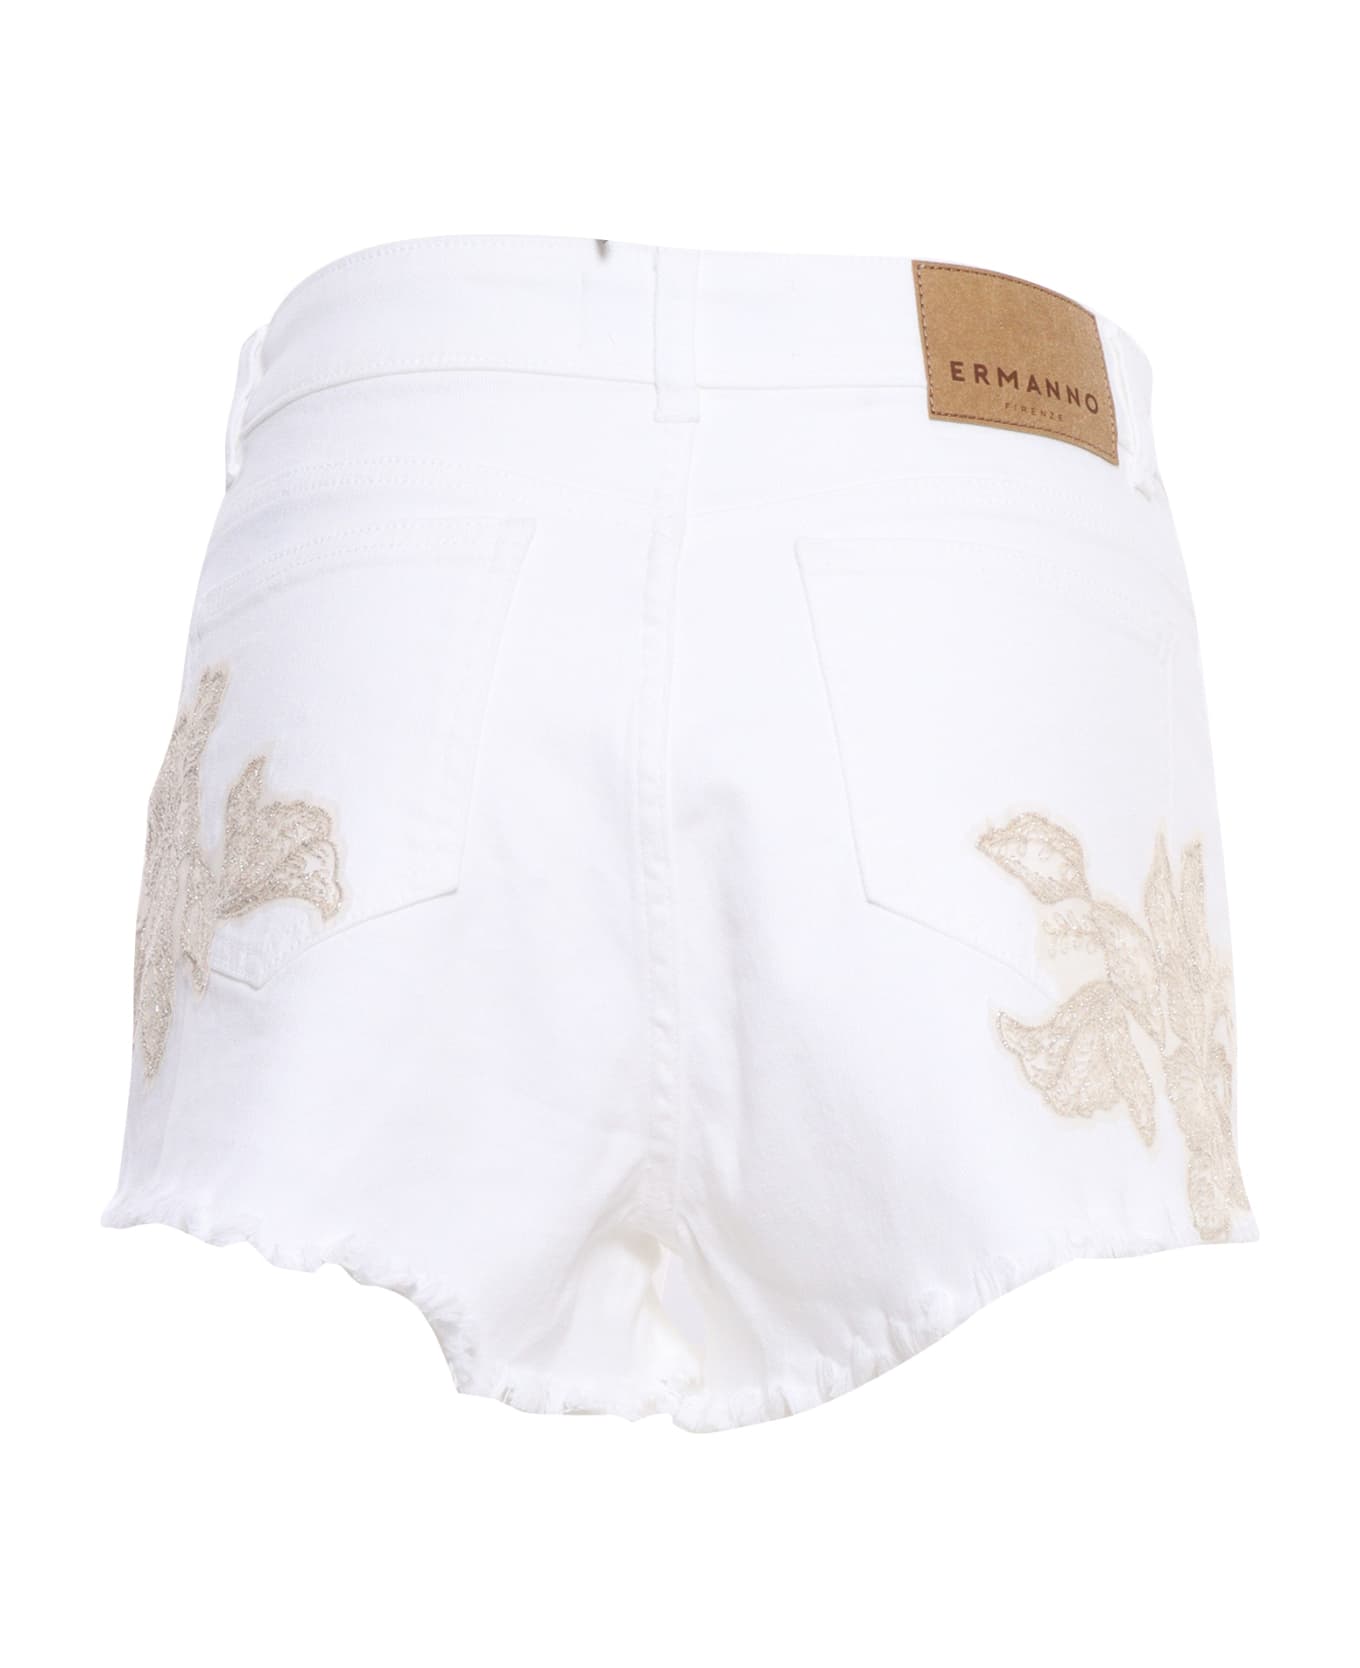 Ermanno Ermanno Scervino White Shorts With Rhinestones - WHITE ショートパンツ